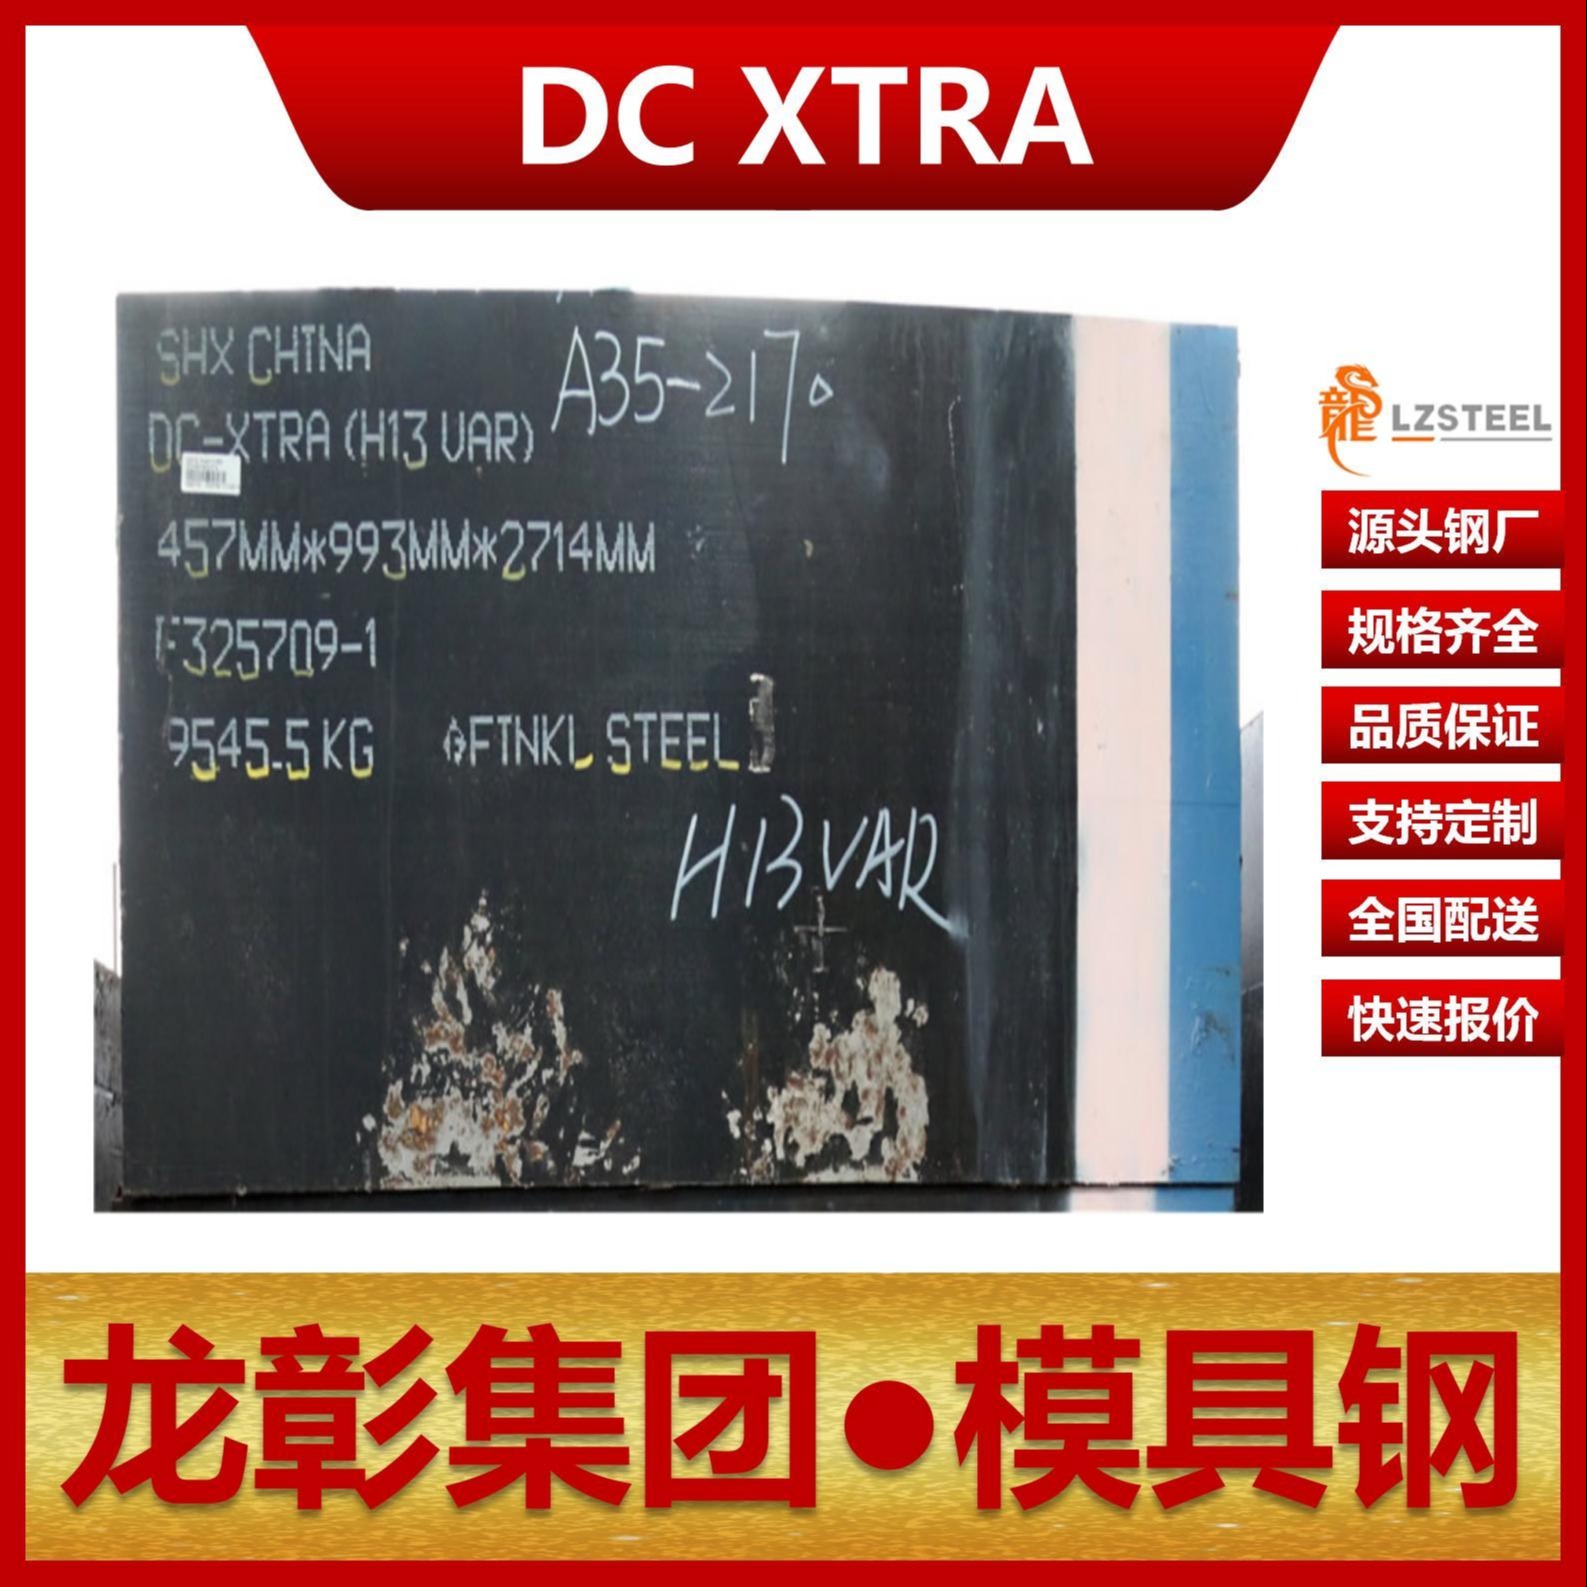 芬可乐DC XTRA模具钢现货批零 进口DC XTRA扁钢圆棒热作模具钢龙彰集团